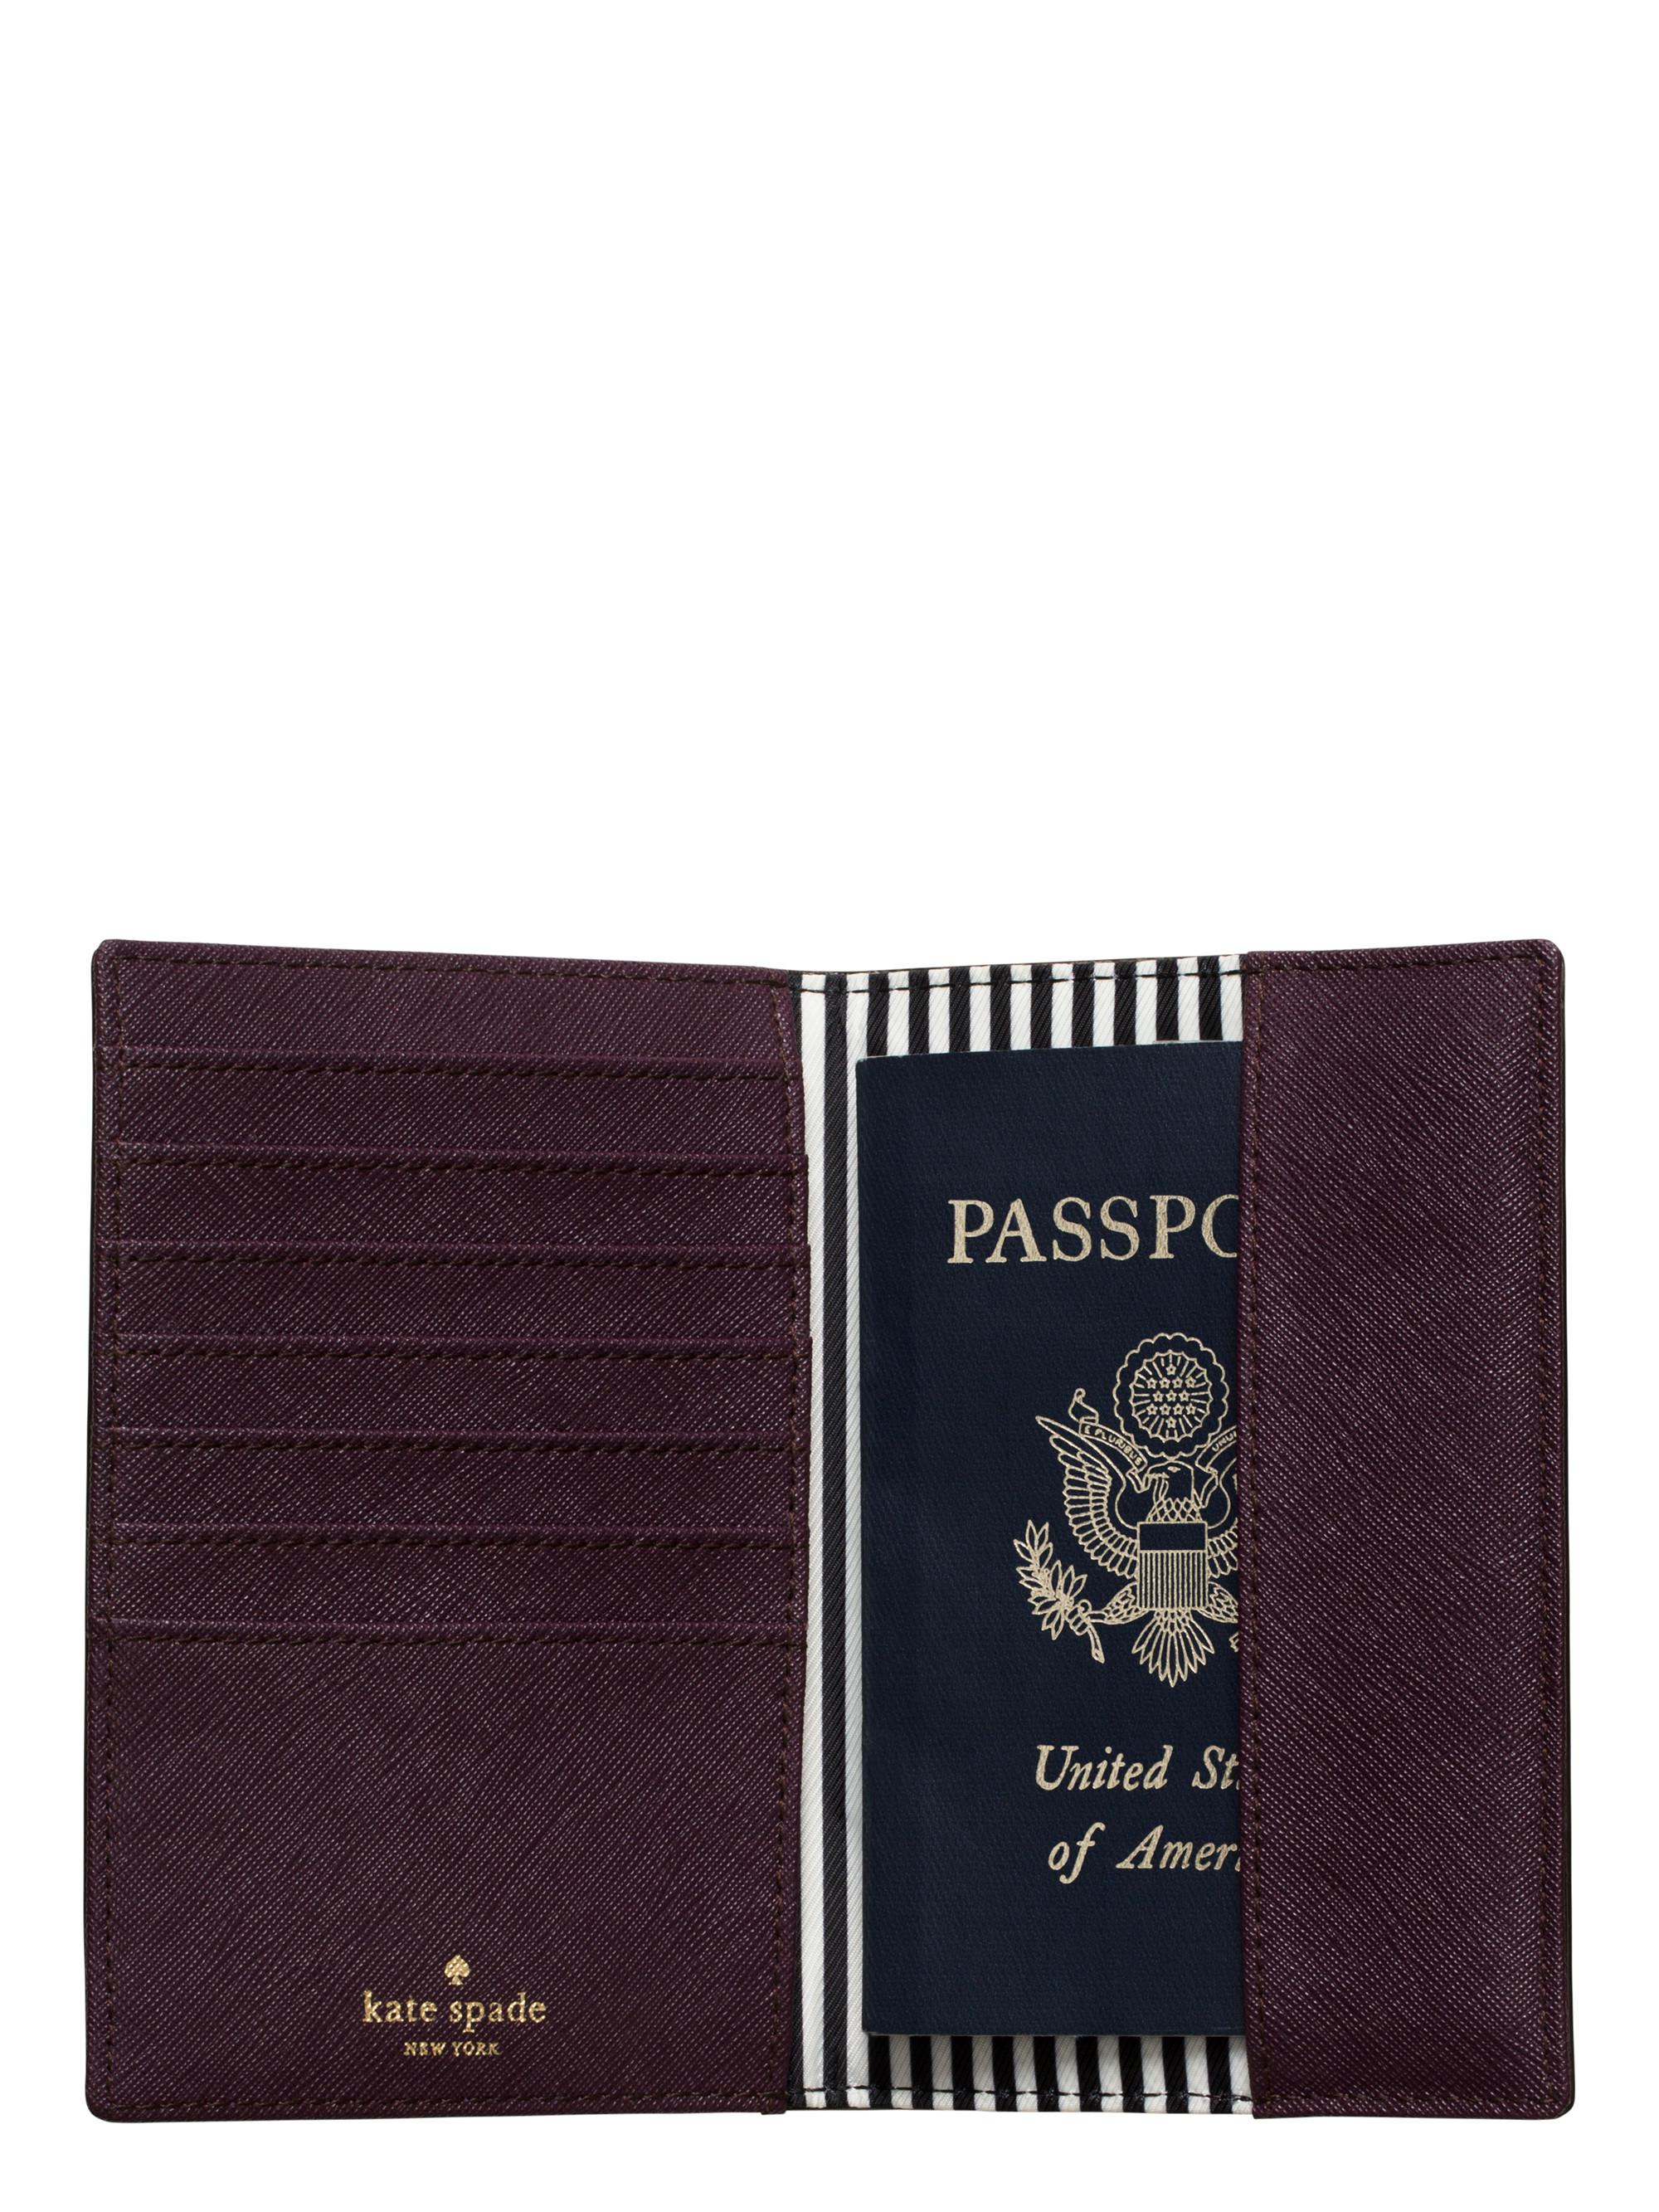 kate spade passport travel case